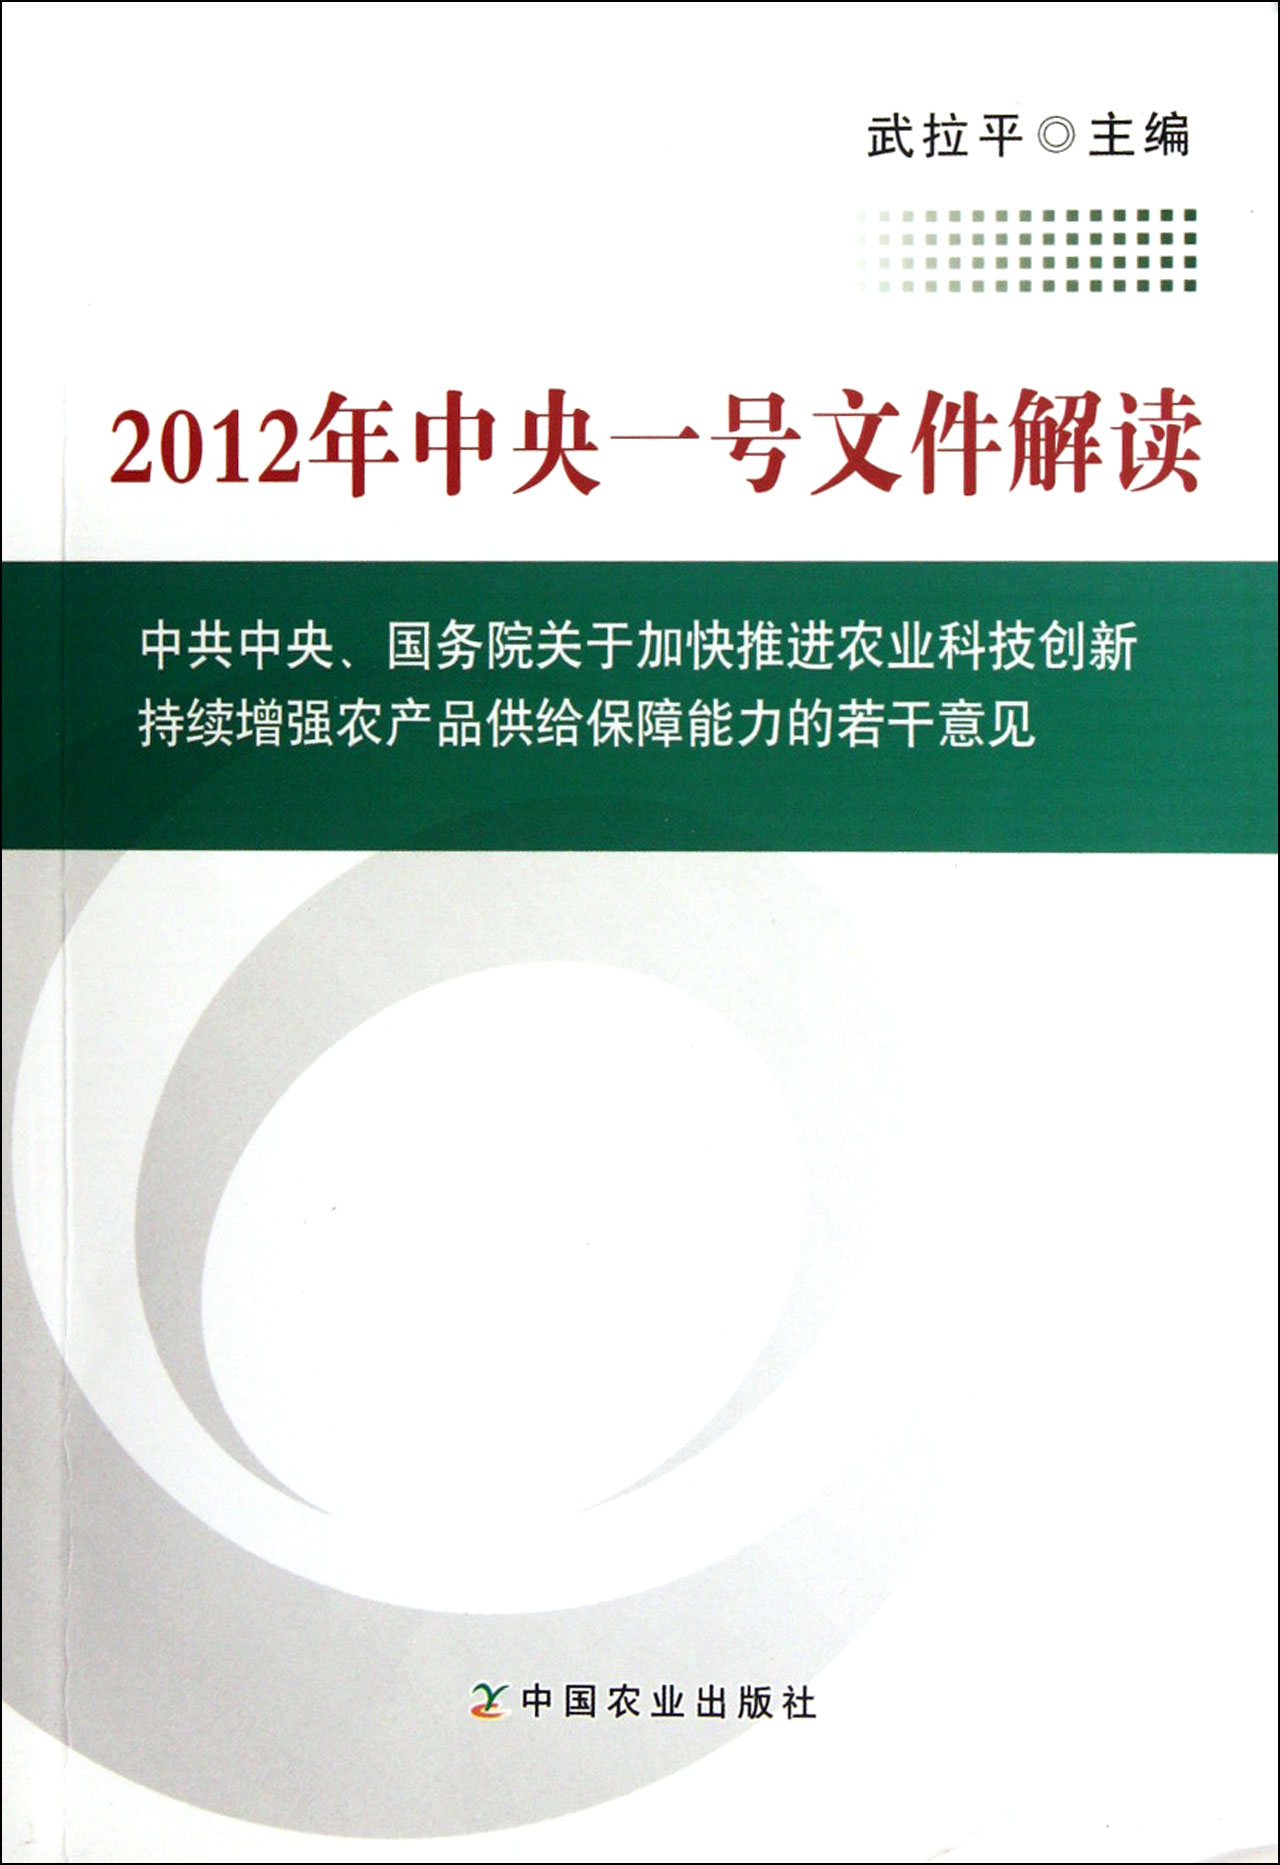 2012年中央一号文件解读中共中央国务院关于